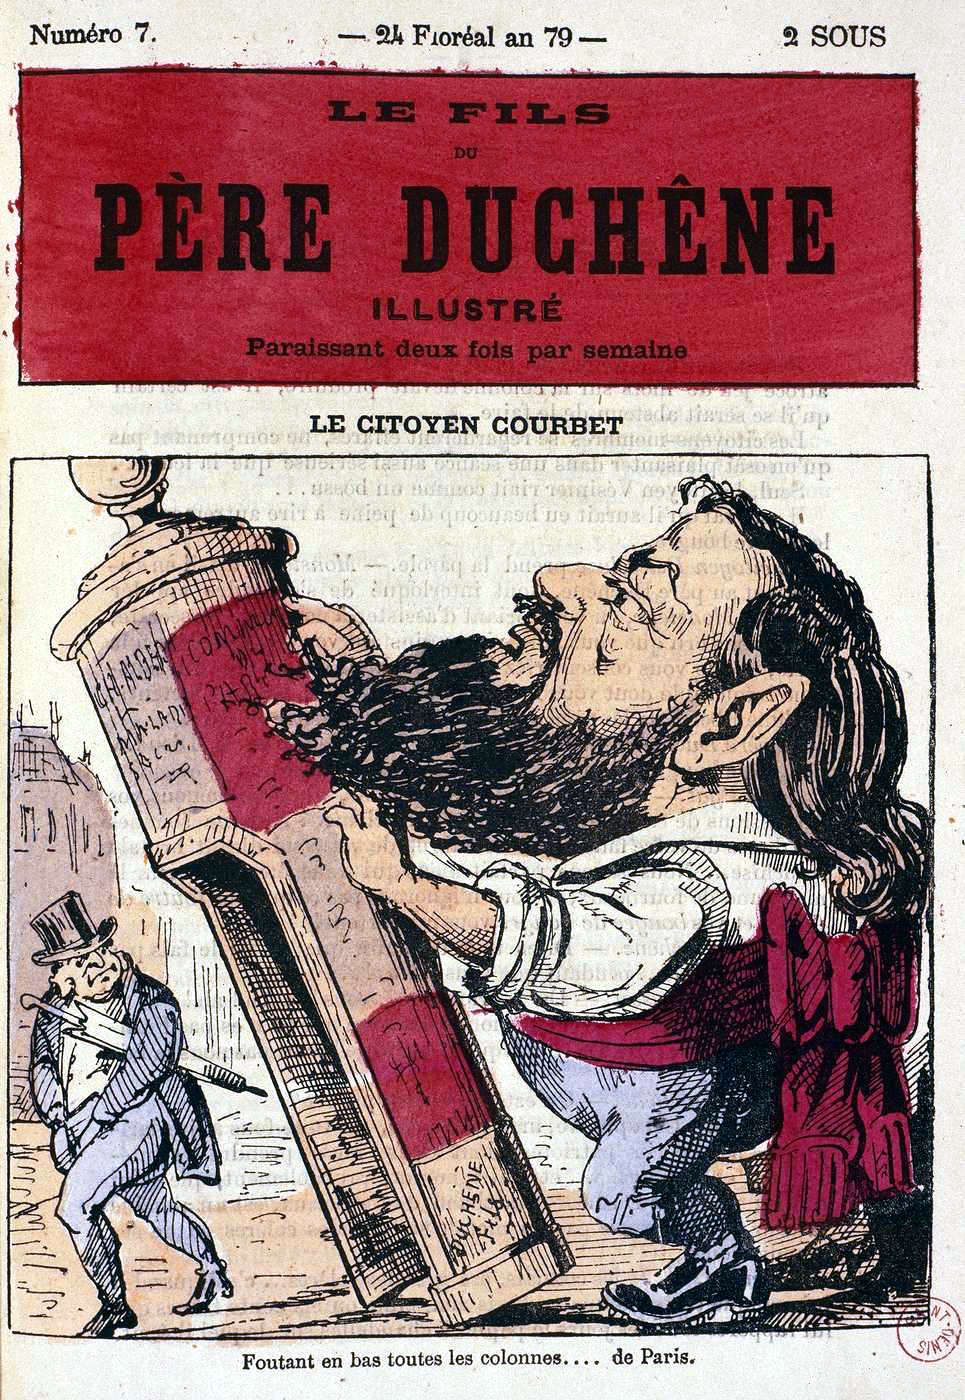 Le citoyen Courbet...foutant en bas toutes les colonnes... de Paris